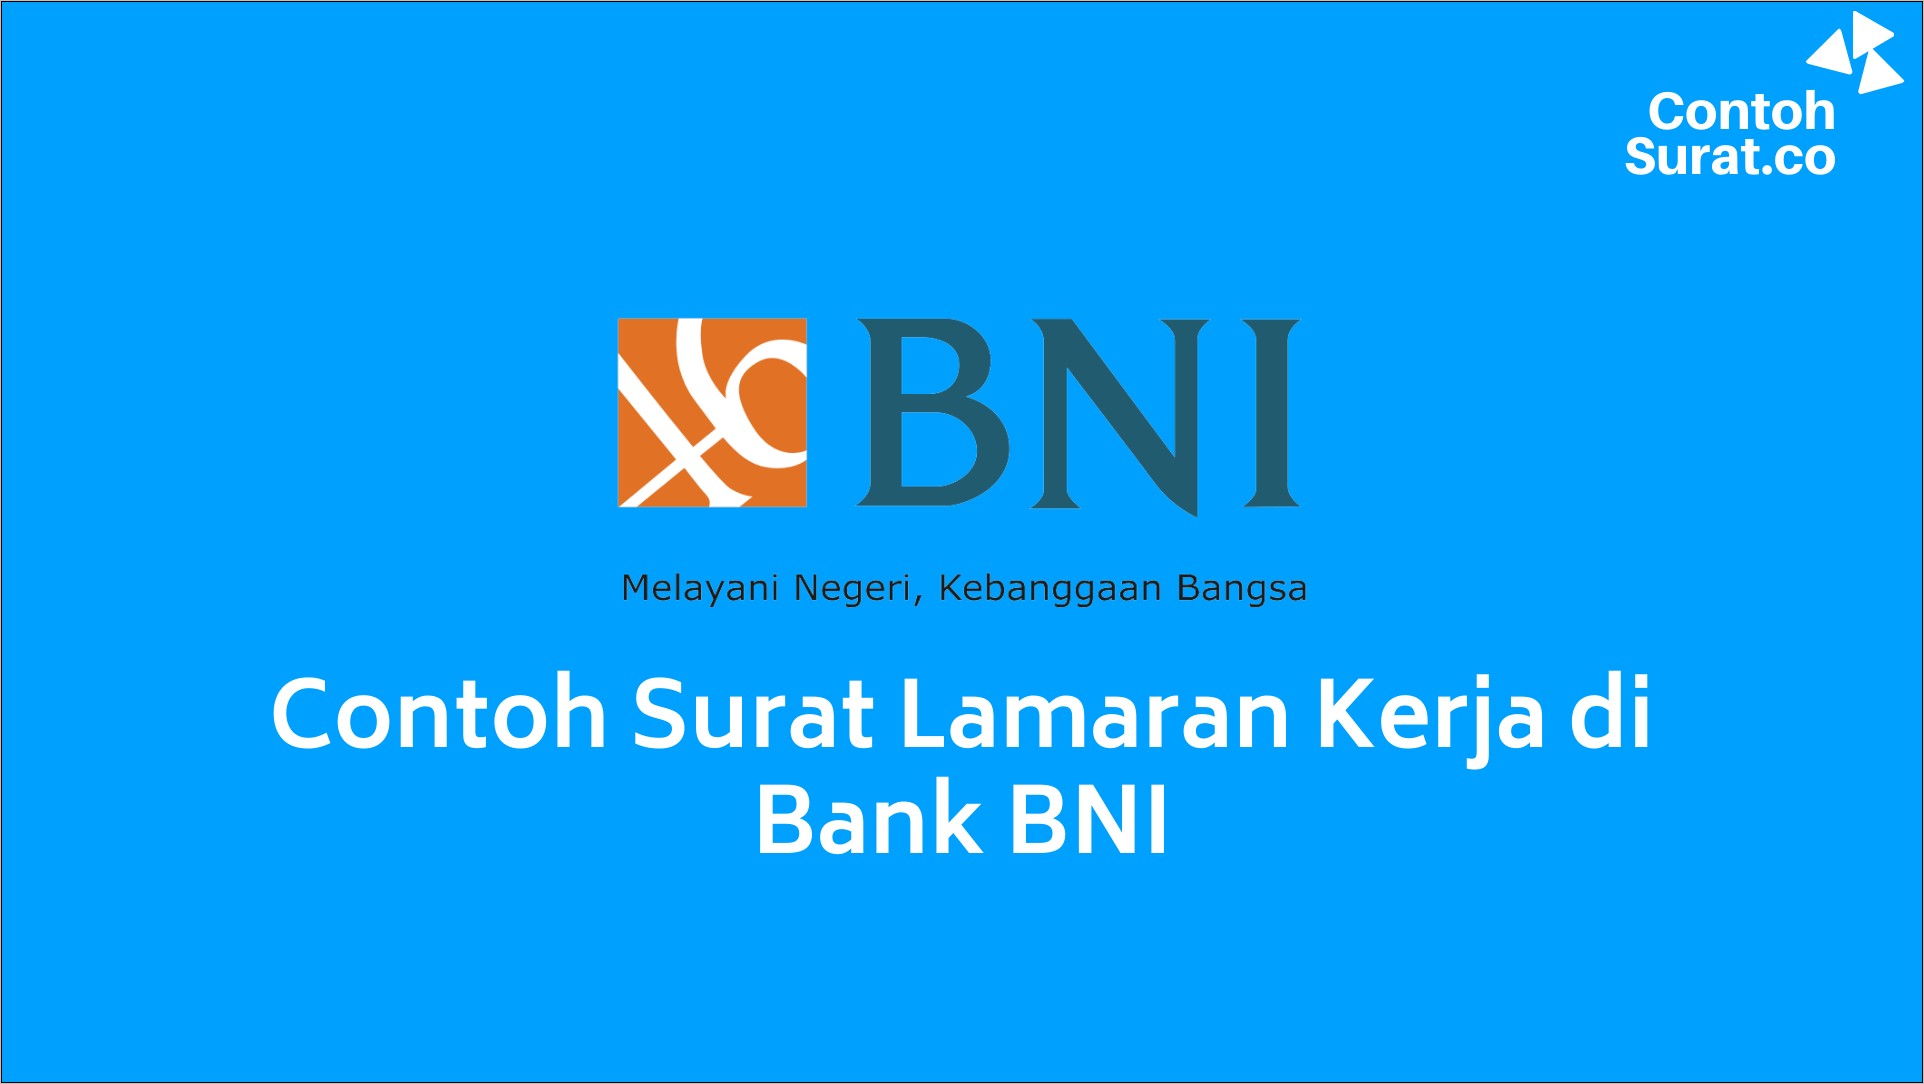 Contoh Surat Lamaran Untuk Bank Bni